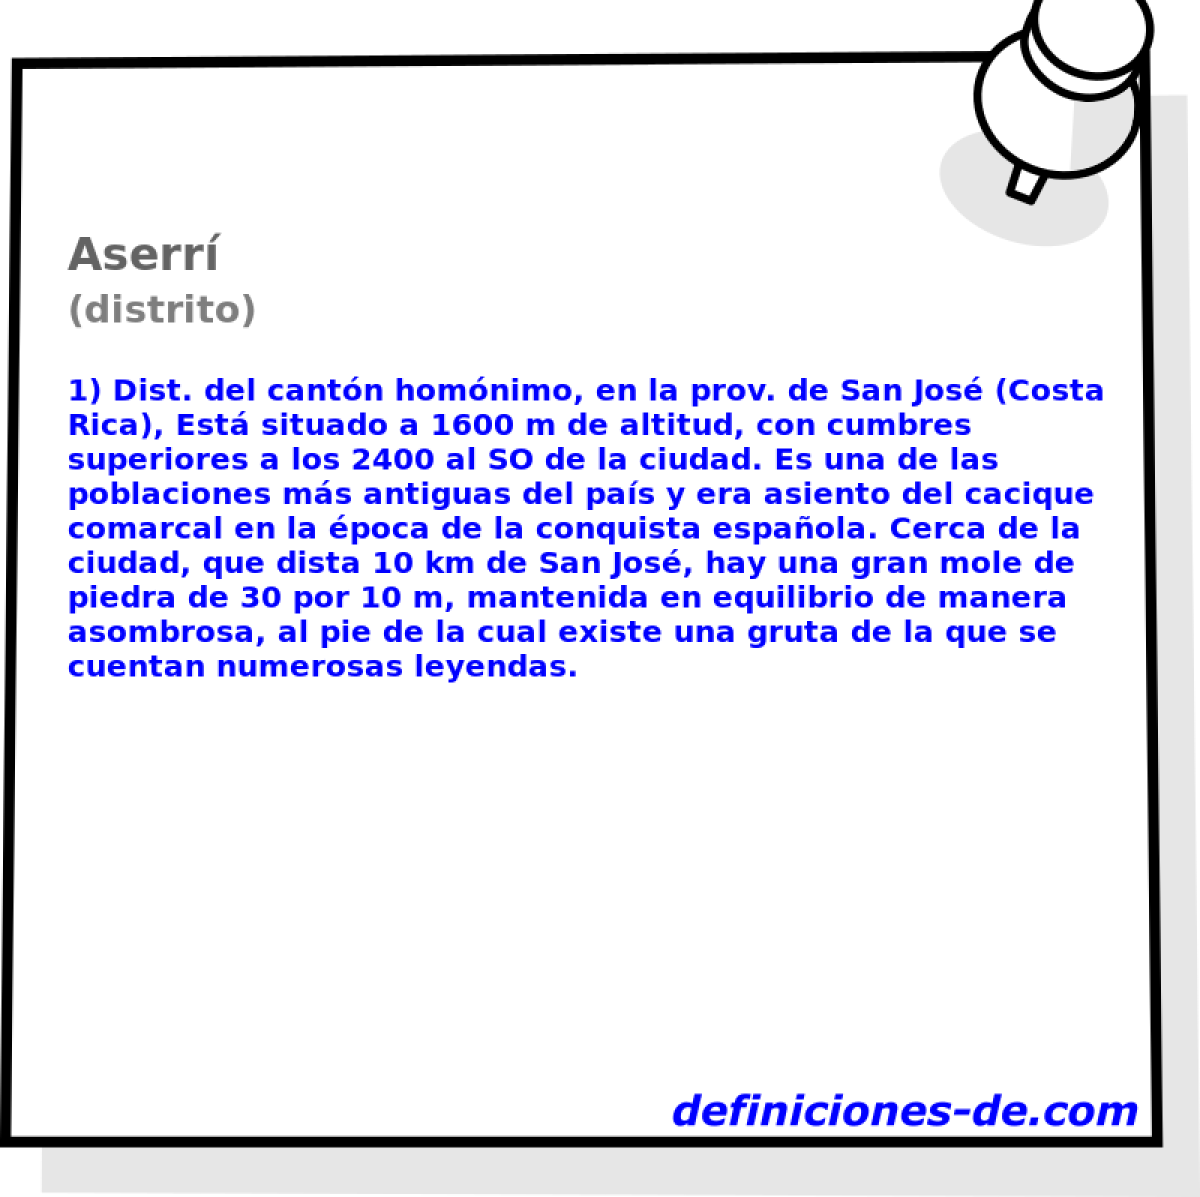 Aserr (distrito)